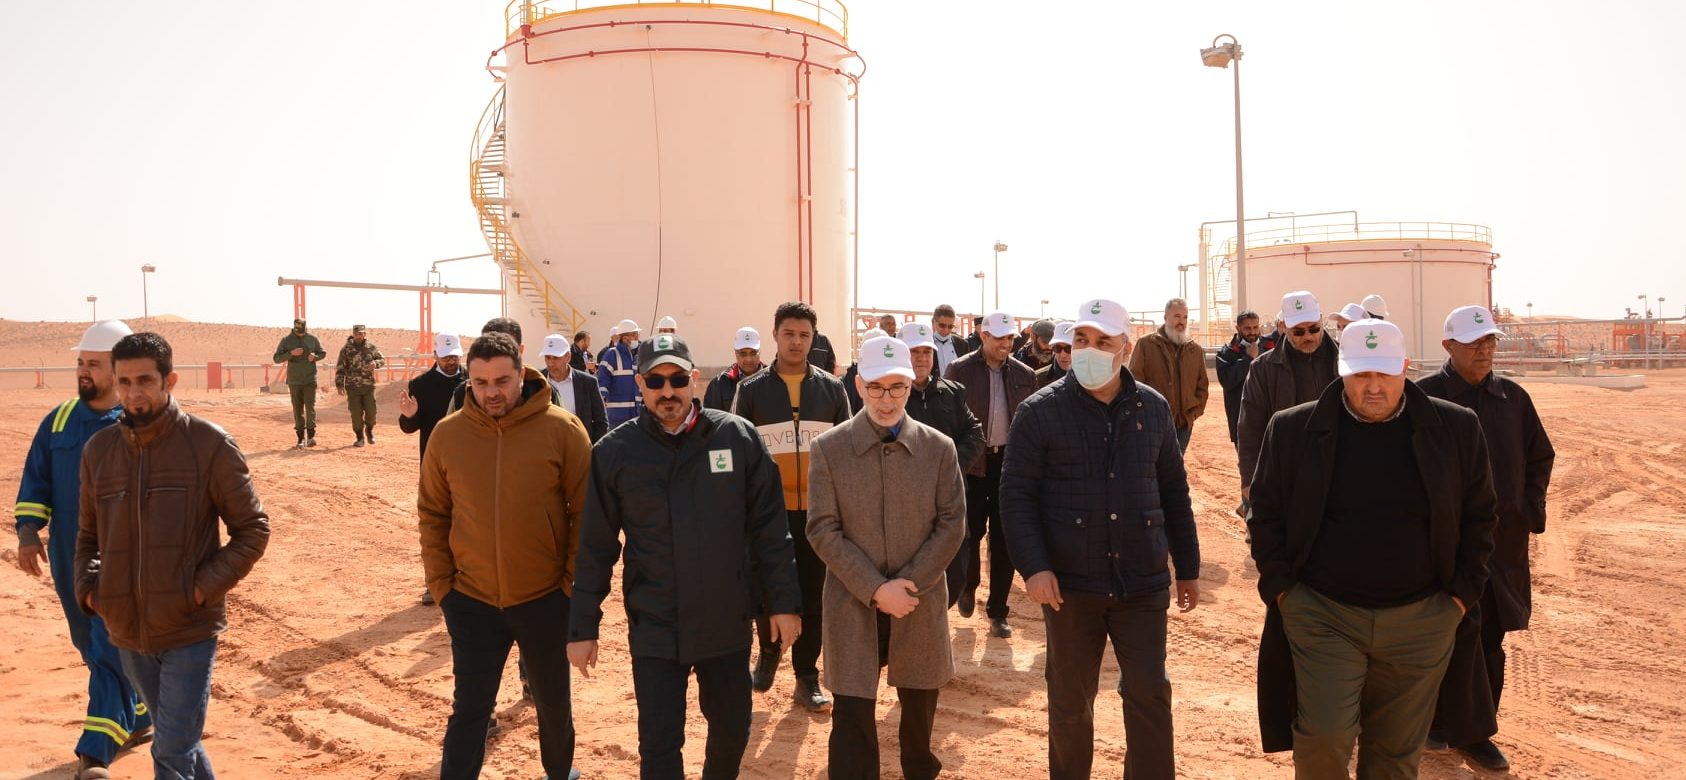 La Libye a annoncé avoir démarré la production de 14 000 barils par jour de pétrole sur le champ de Tahara, dans le bassin de Hamada